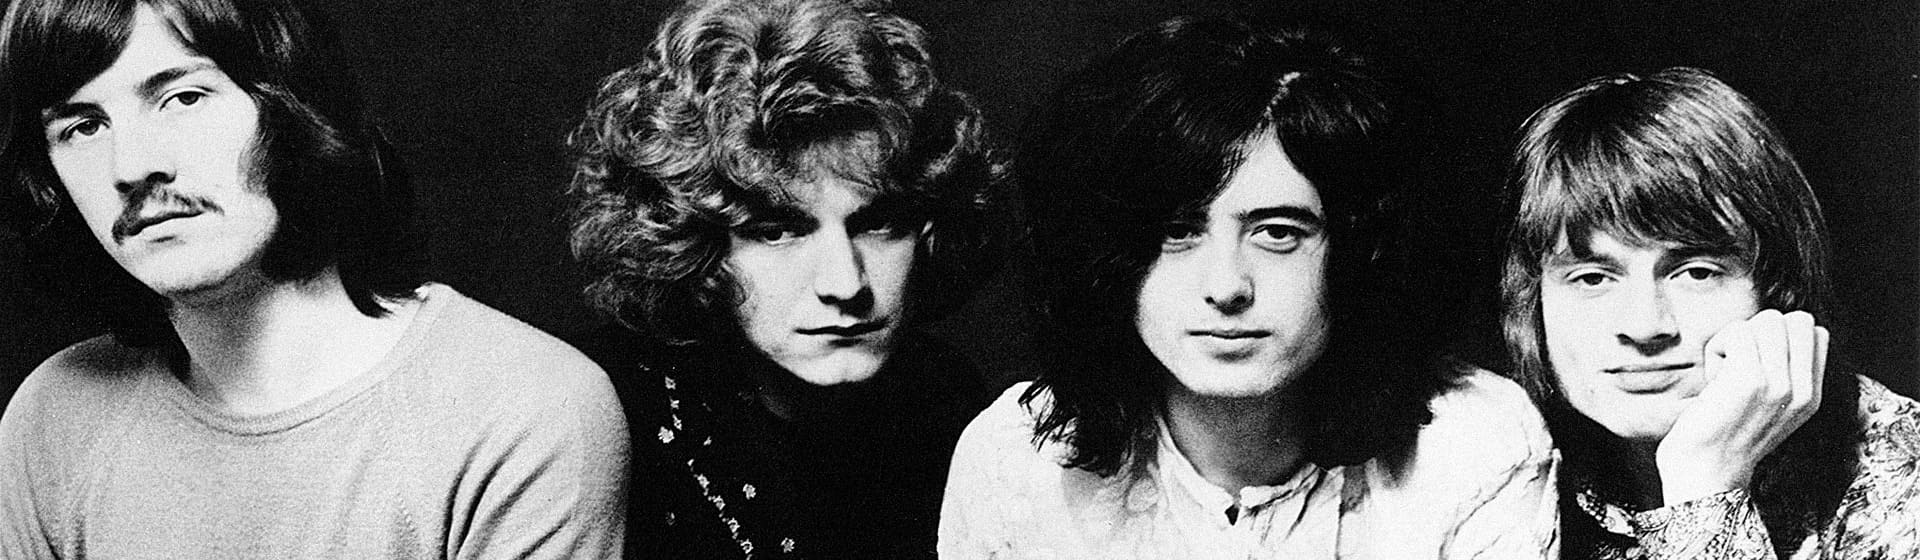 Led Zeppelin - Костюмы